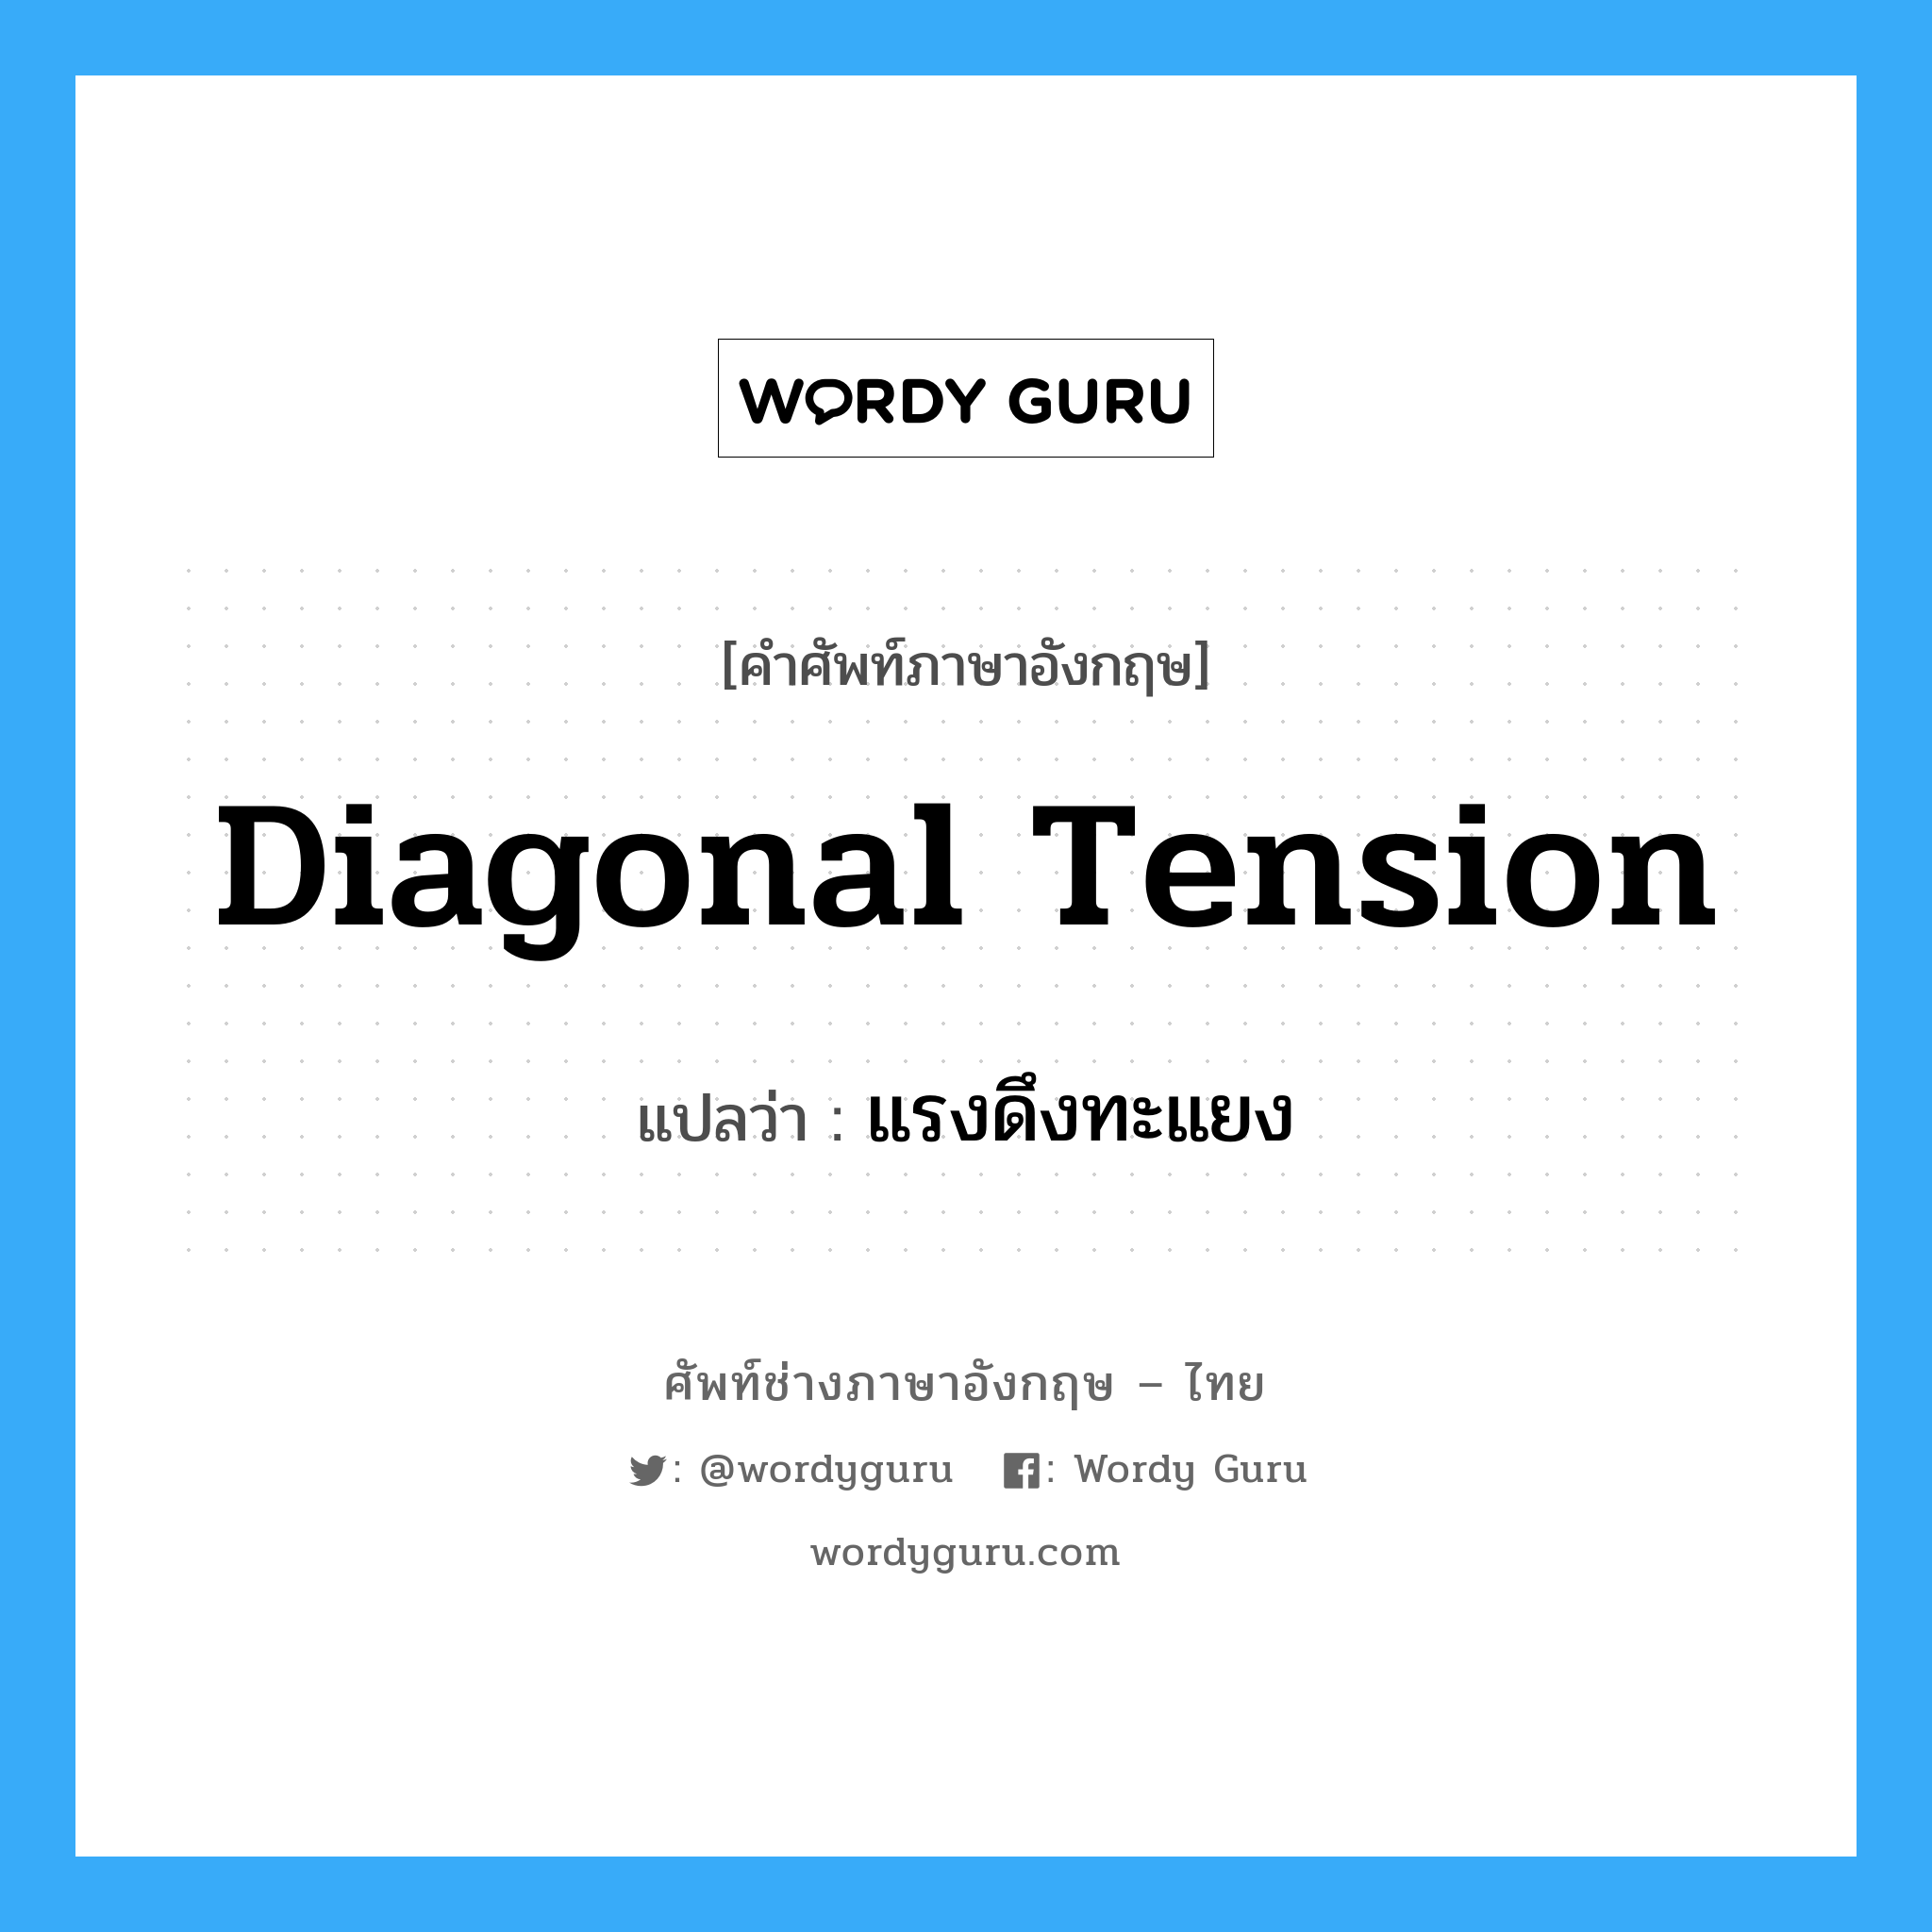 diagonal tension แปลว่า?, คำศัพท์ช่างภาษาอังกฤษ - ไทย diagonal tension คำศัพท์ภาษาอังกฤษ diagonal tension แปลว่า แรงดึงทะแยง